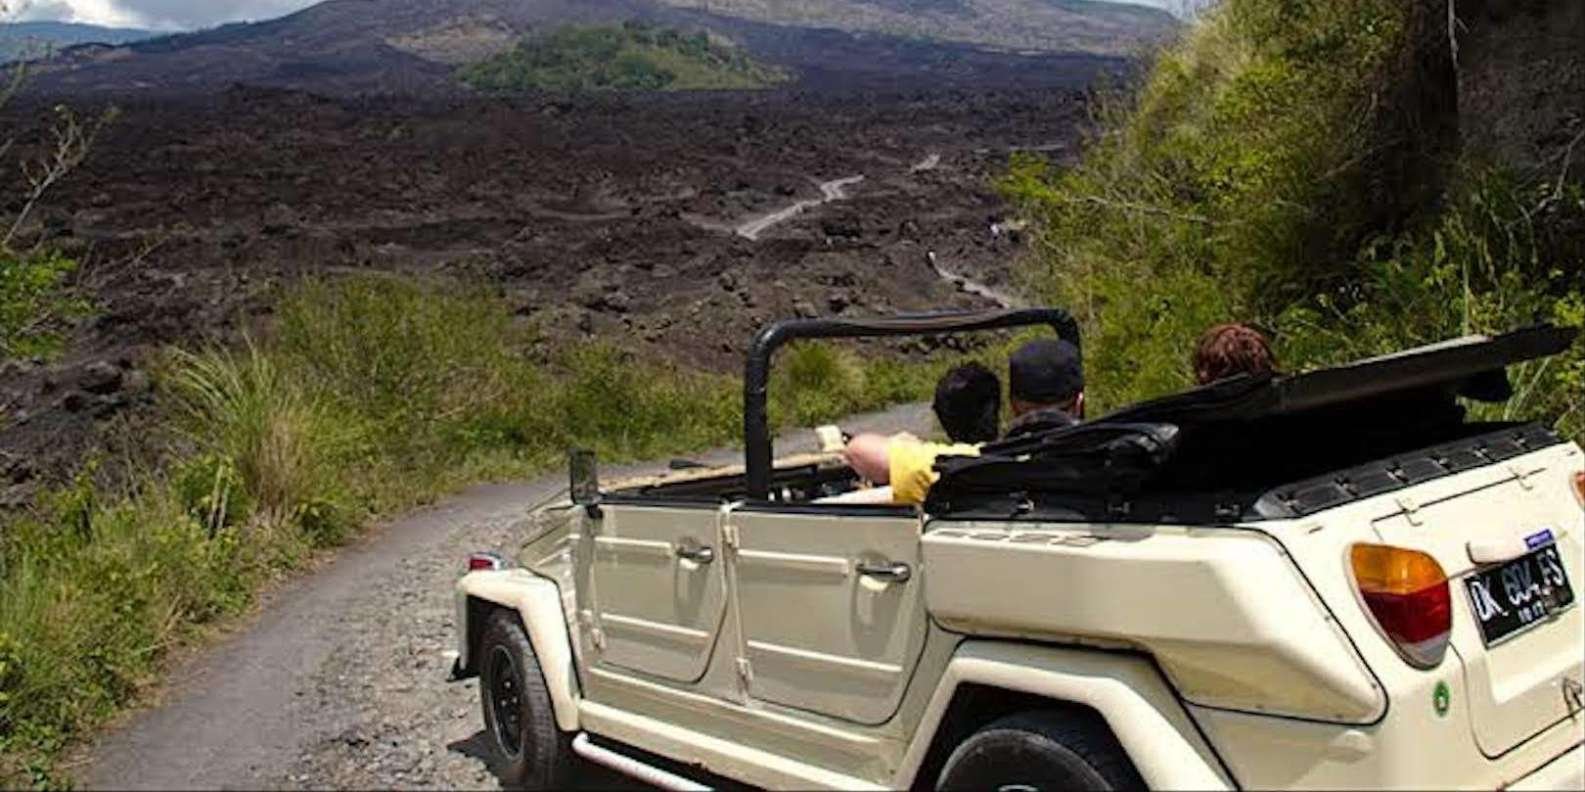 016-mount-batur-volkswagen-jeep-volcano-safari-9-t187437.jpg